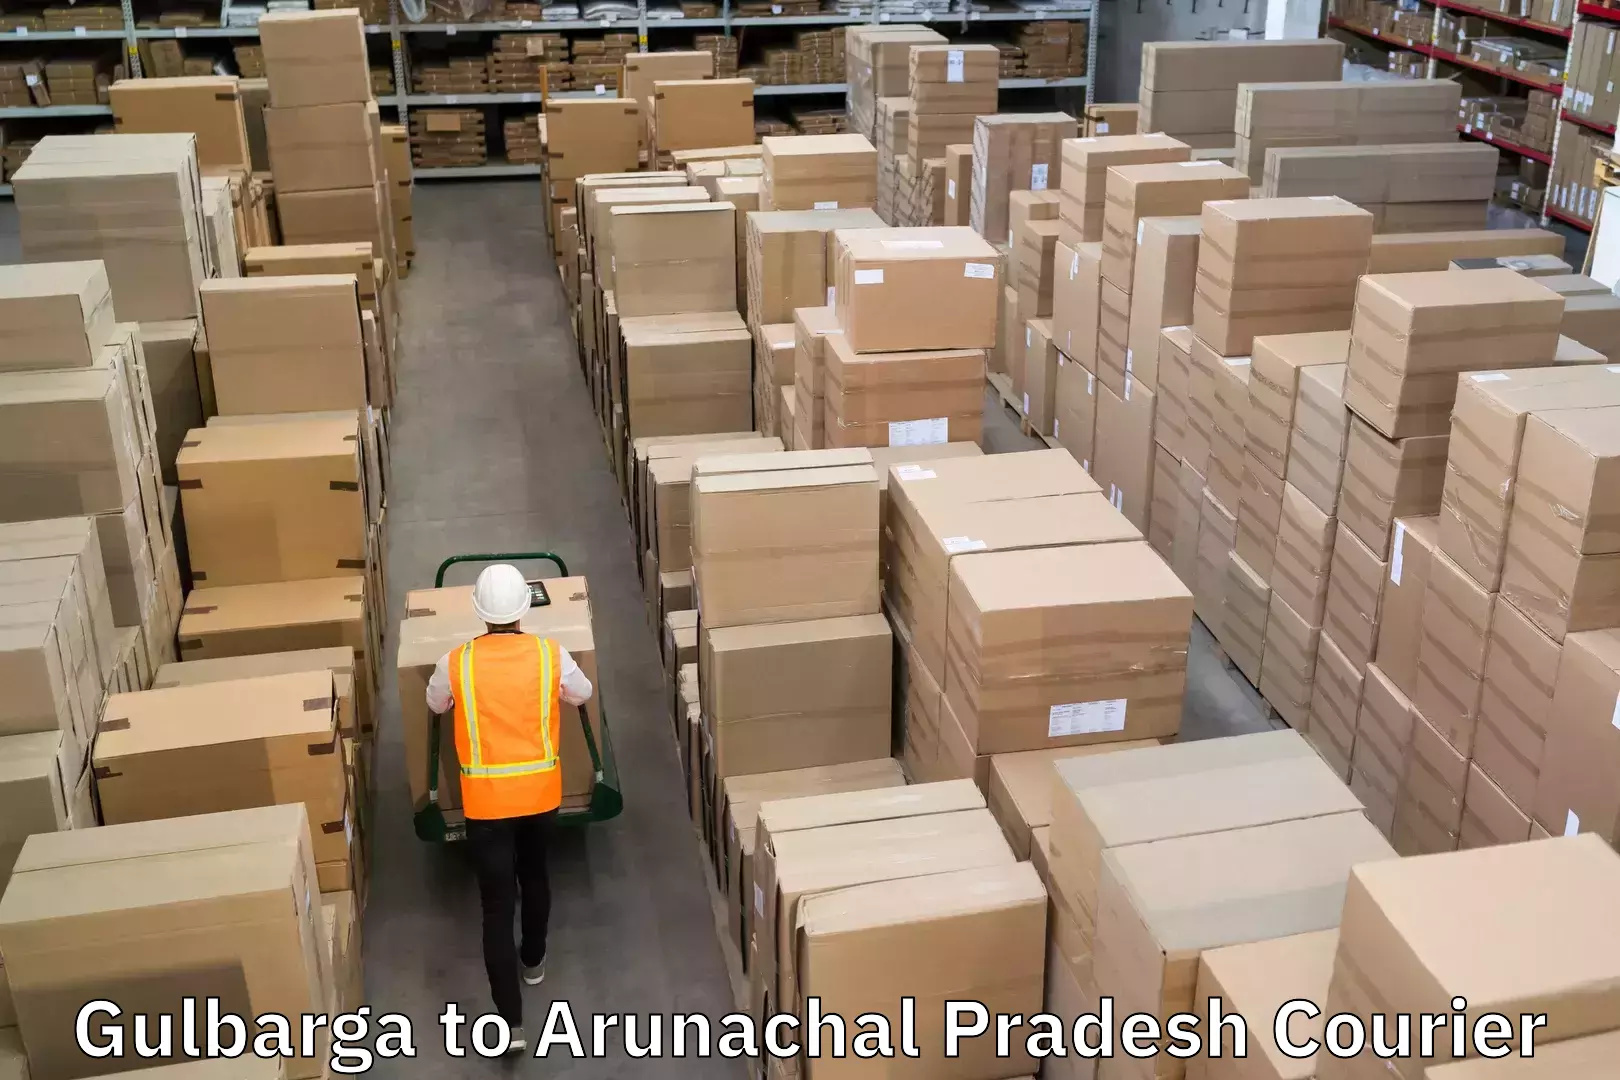 Courier service comparison Gulbarga to Arunachal Pradesh